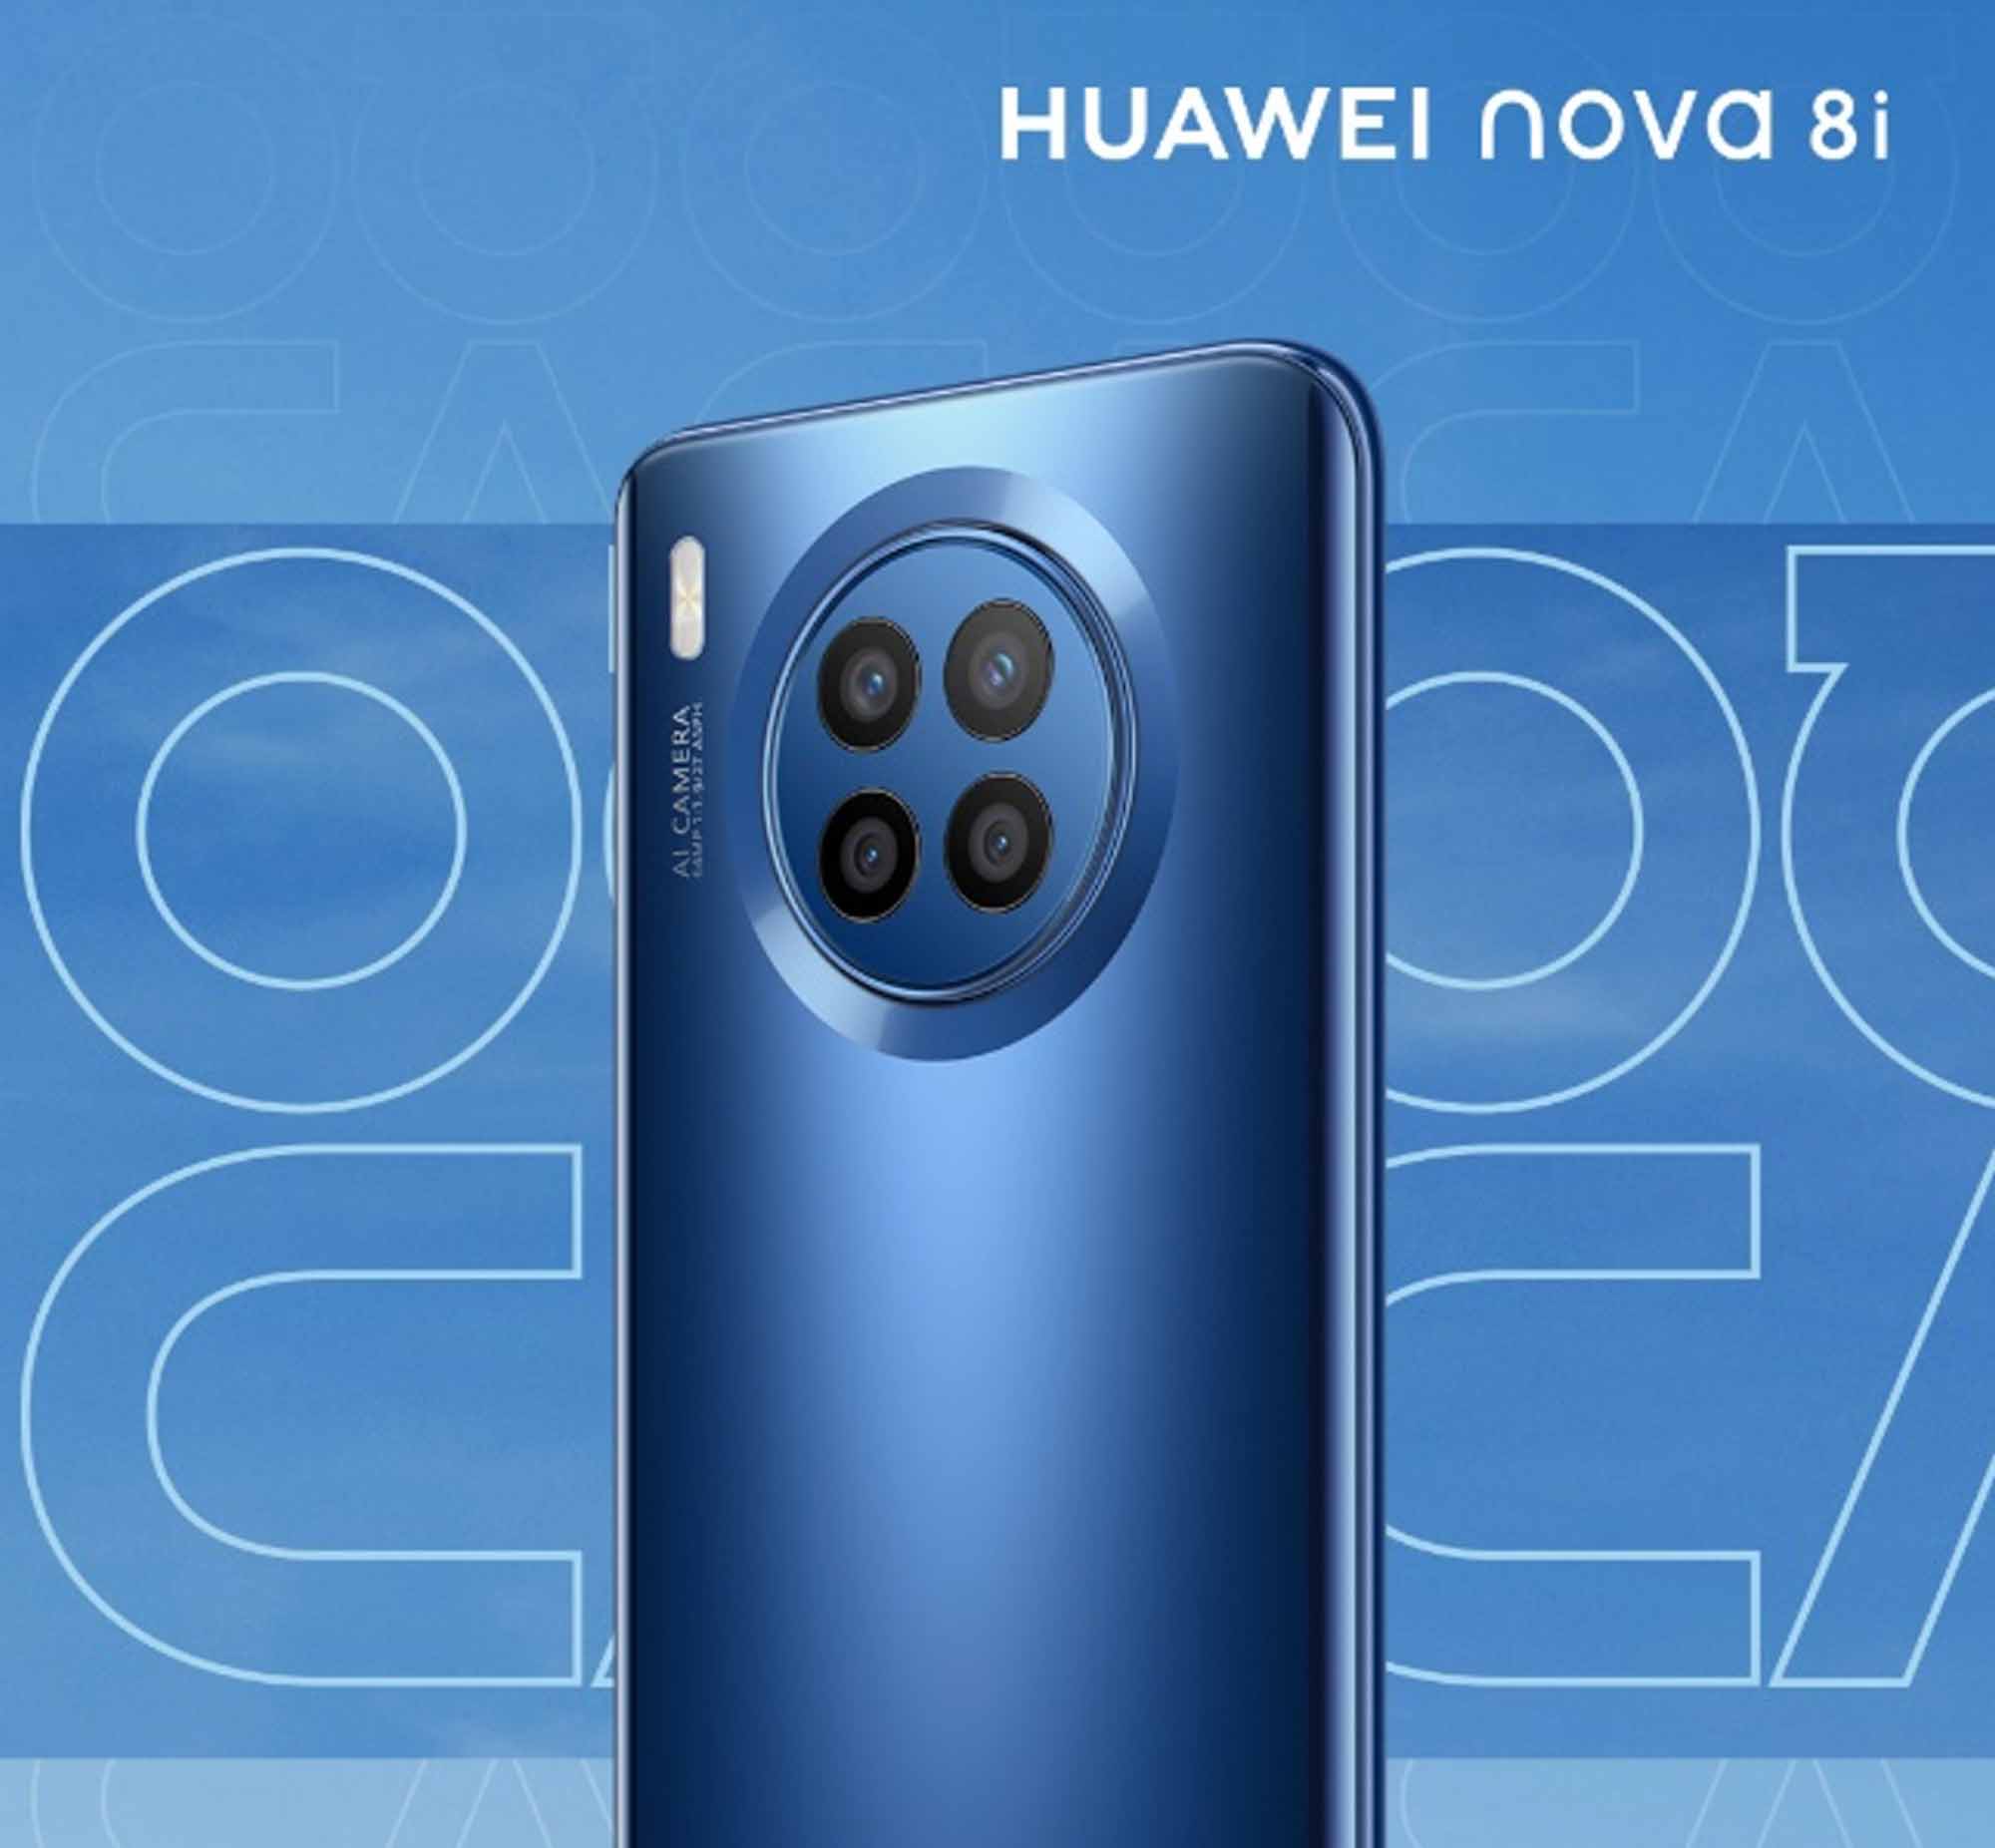 Huawei ra mắt 6 sản phẩm cao cấp tại Châu Á Thái Bình Dương